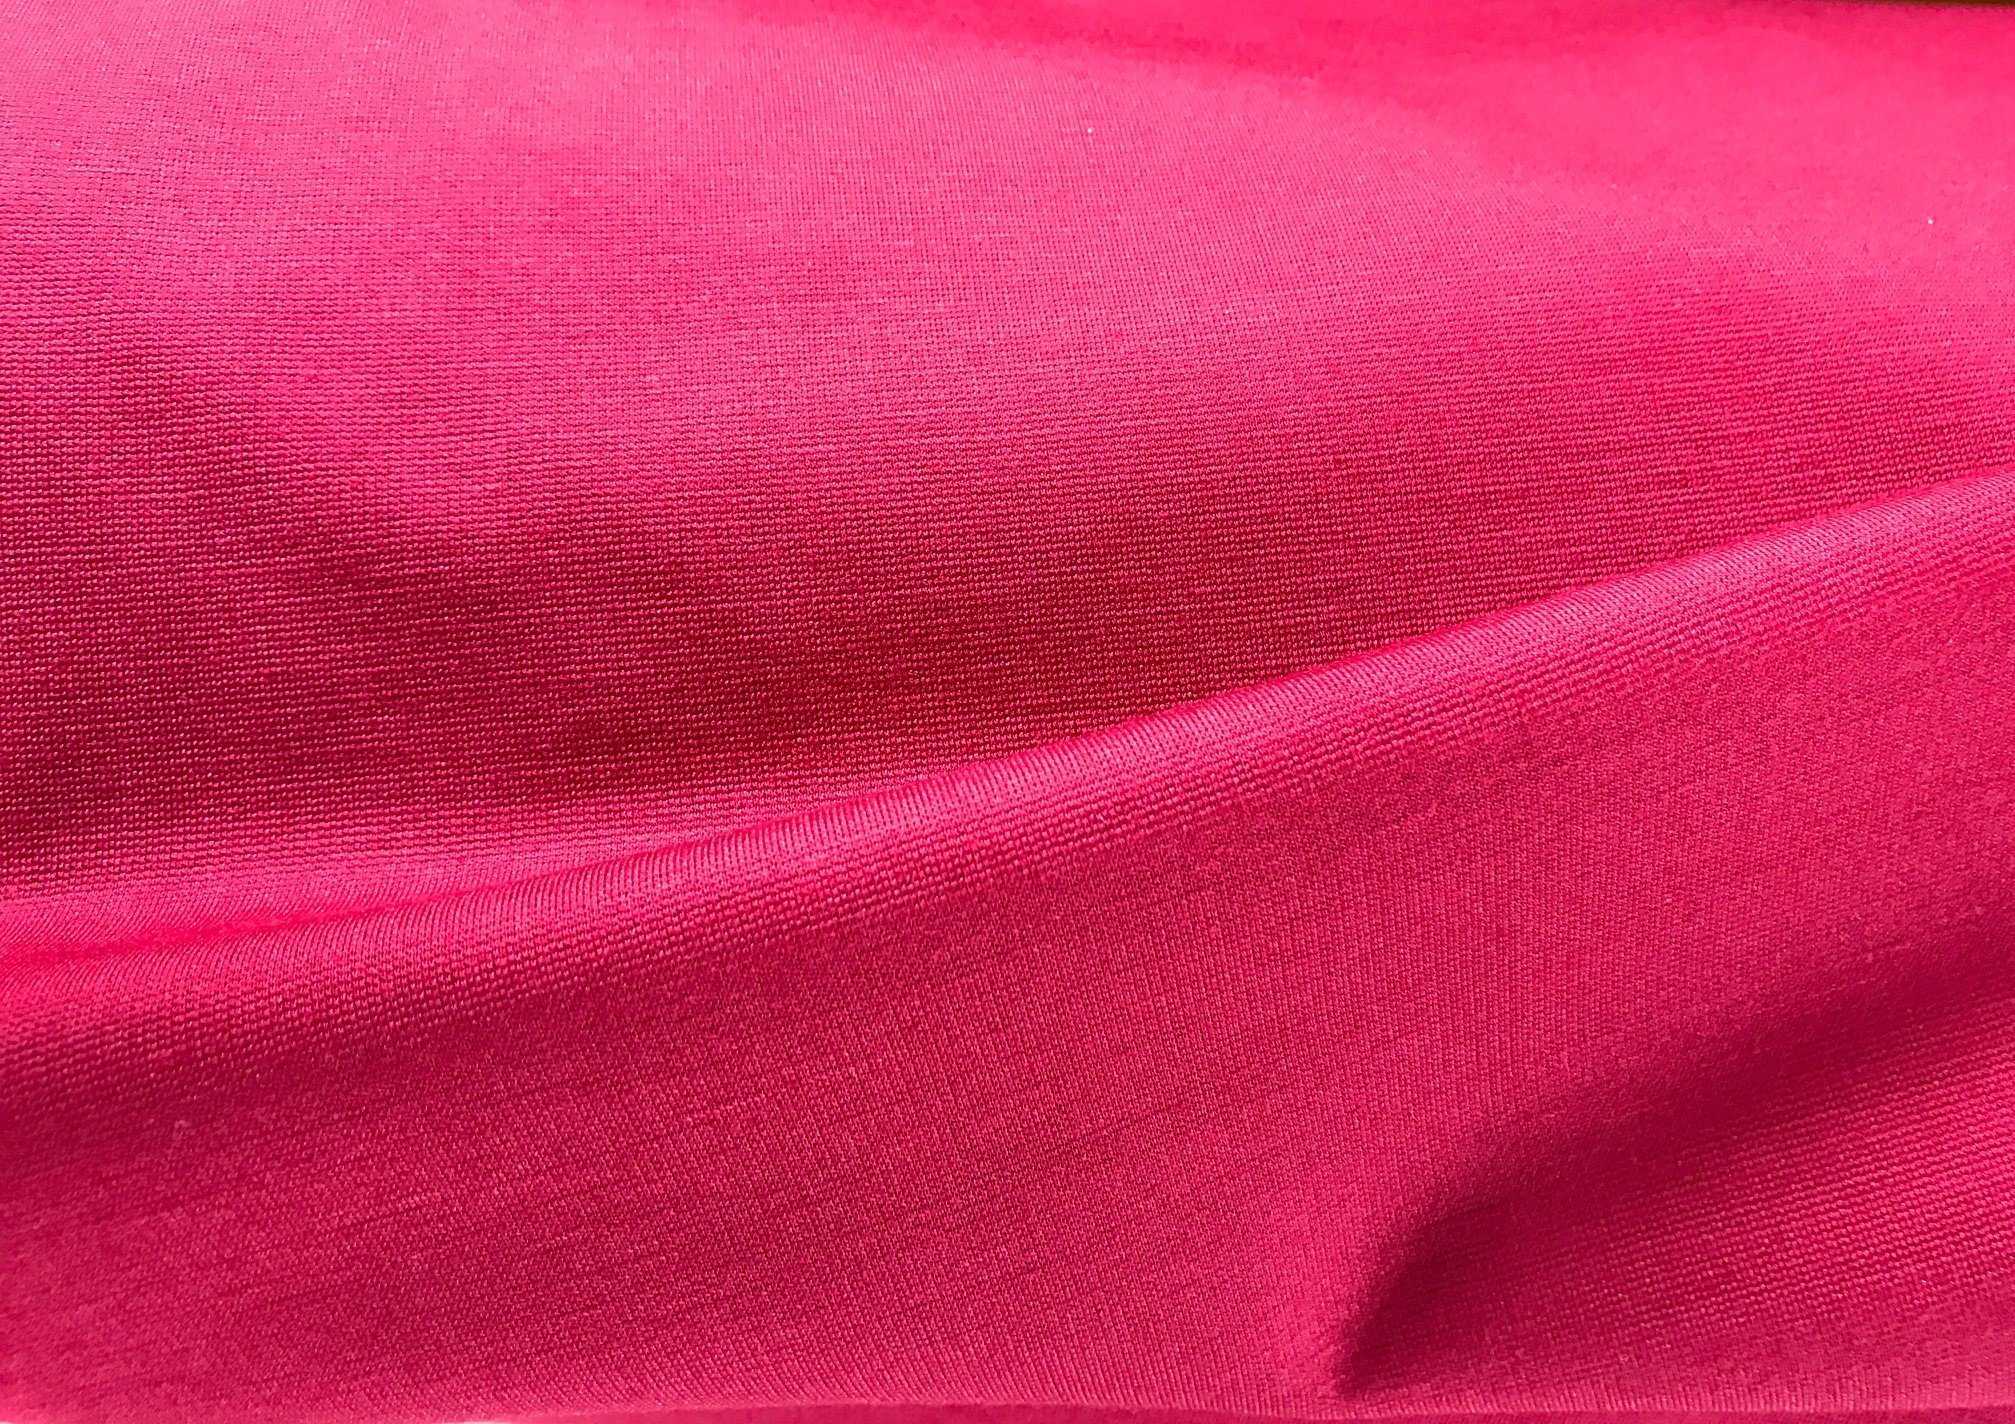 Описание состава ткани милано: особенности и применение